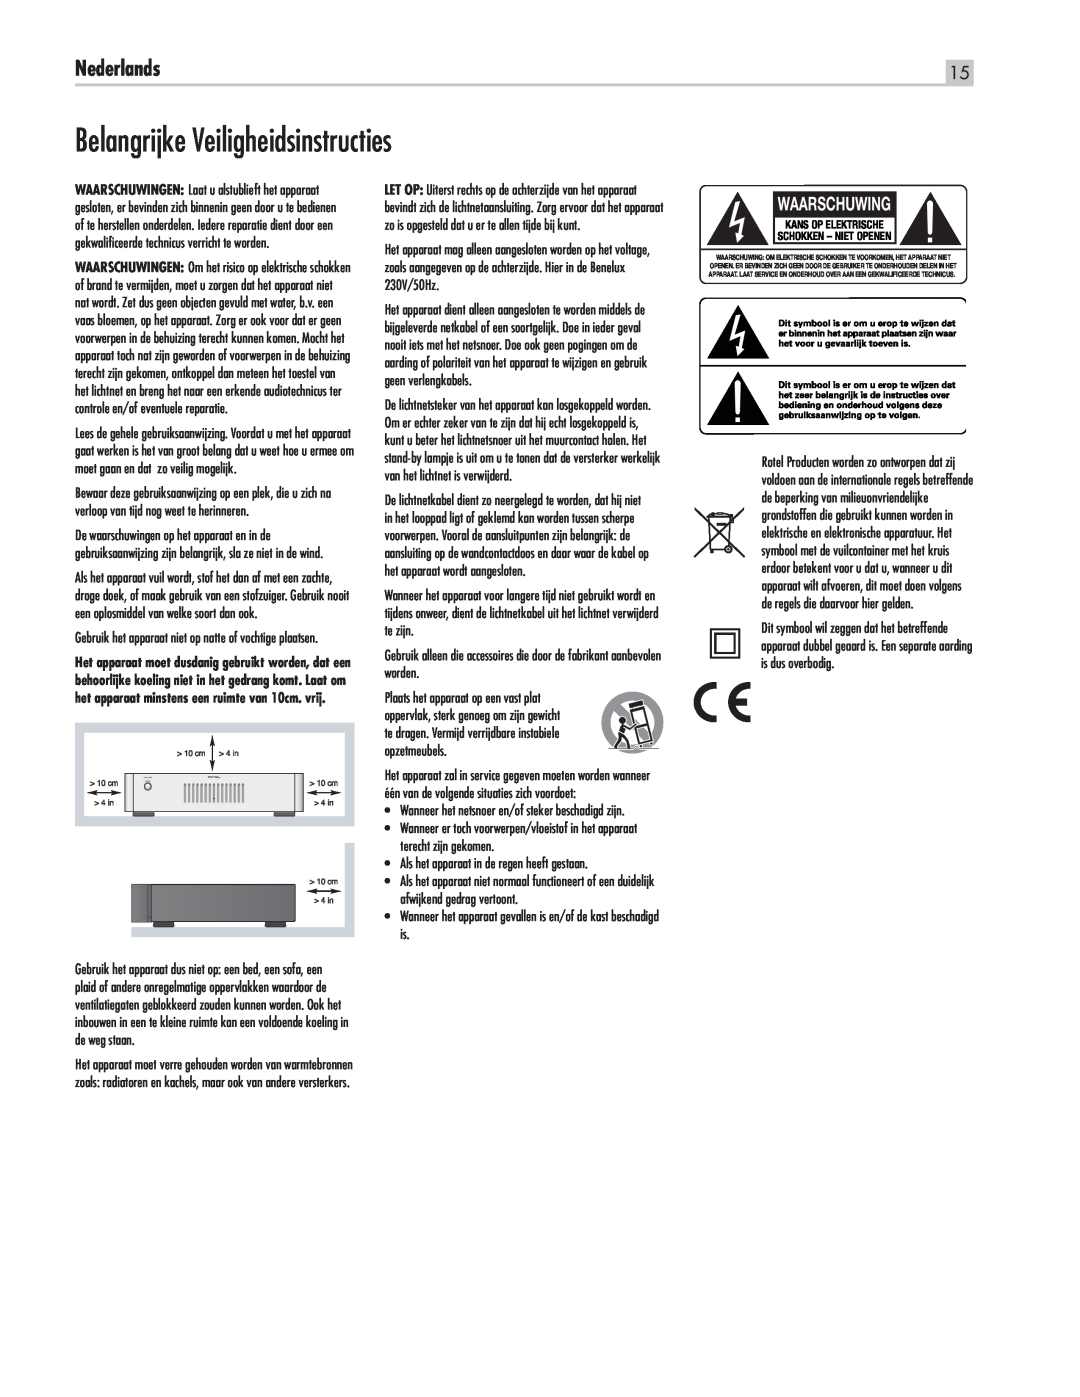 Rotel RMB-1565, RMB1575BK manual Belangrijke Veiligheidsinstructies, Nederlands, Waarschuwing 